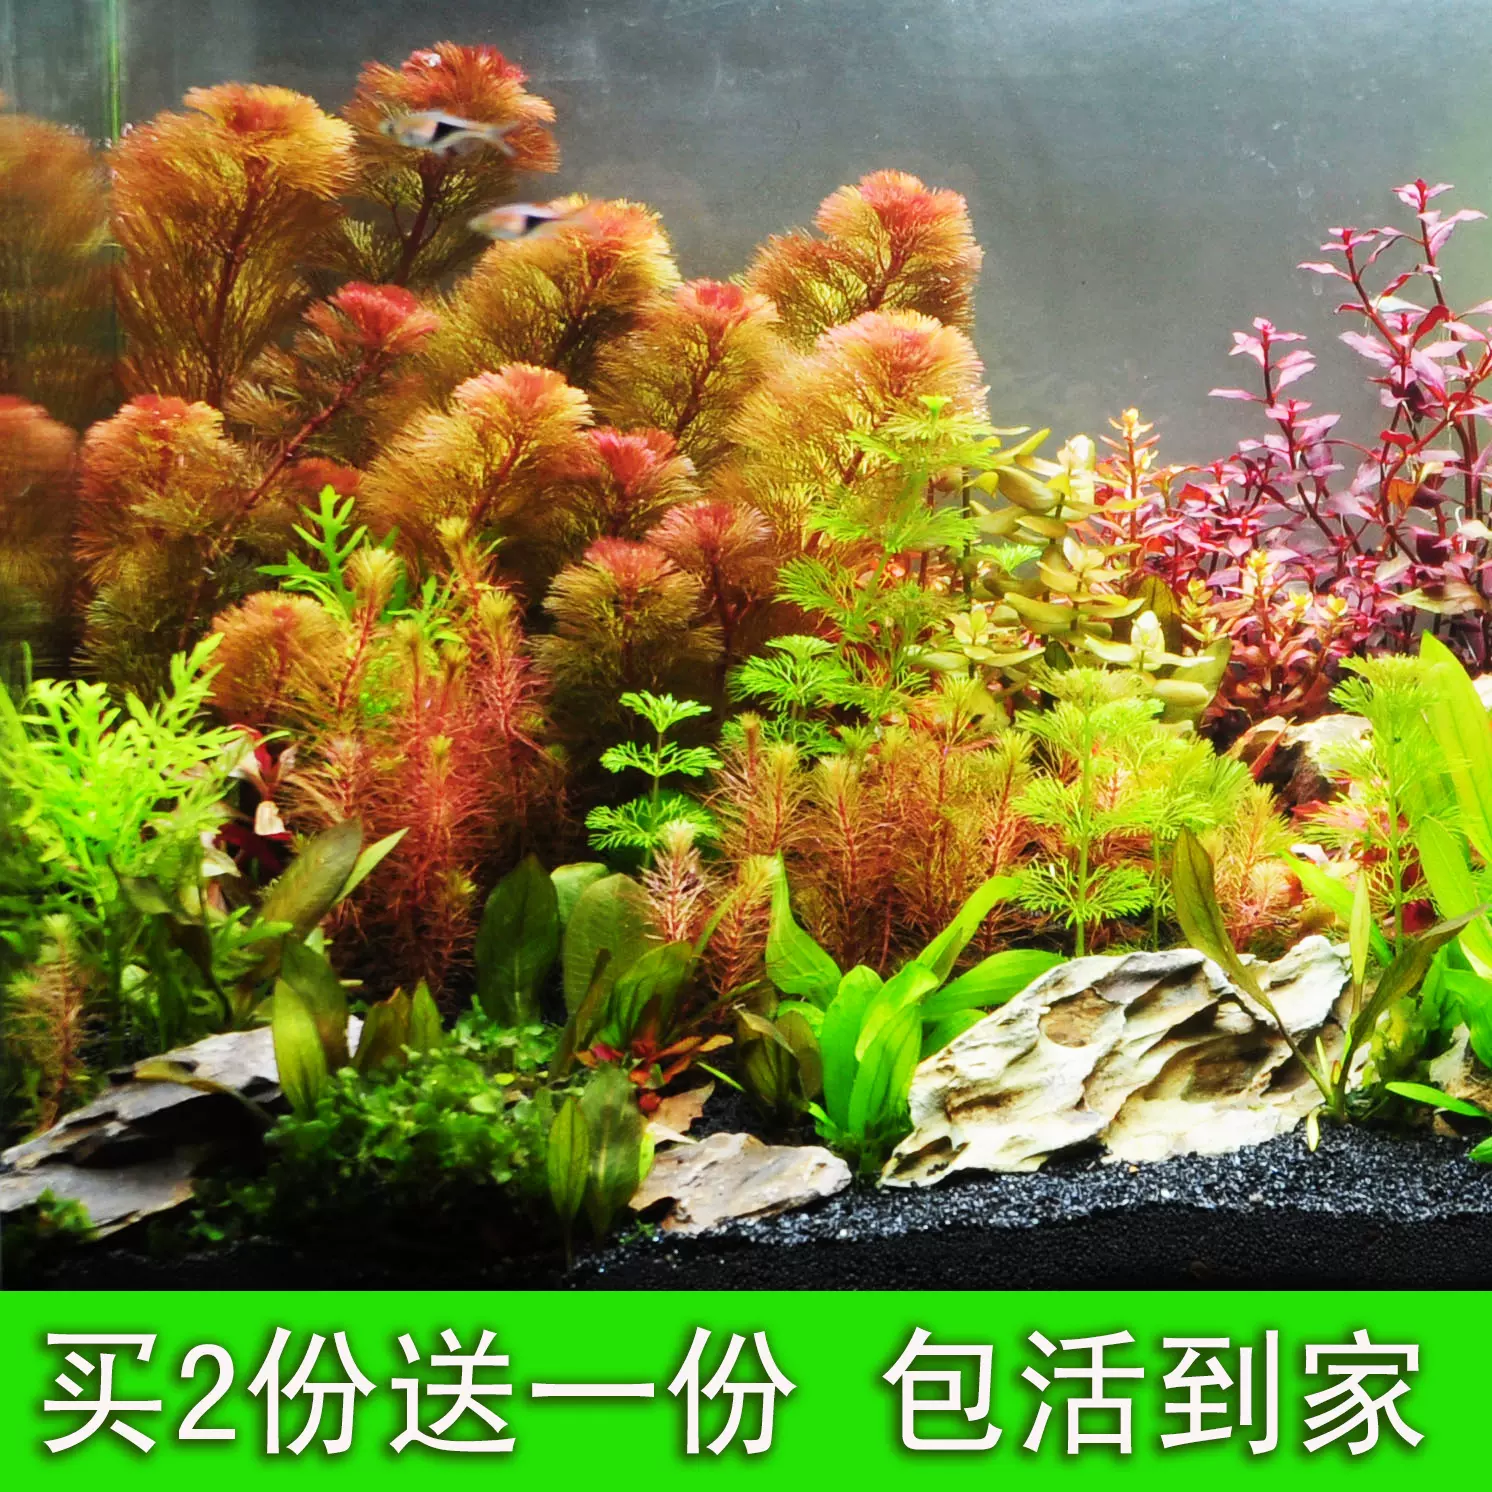 水草植物鱼缸懒人造景装饰增氧淡水四季活体真阴性水生